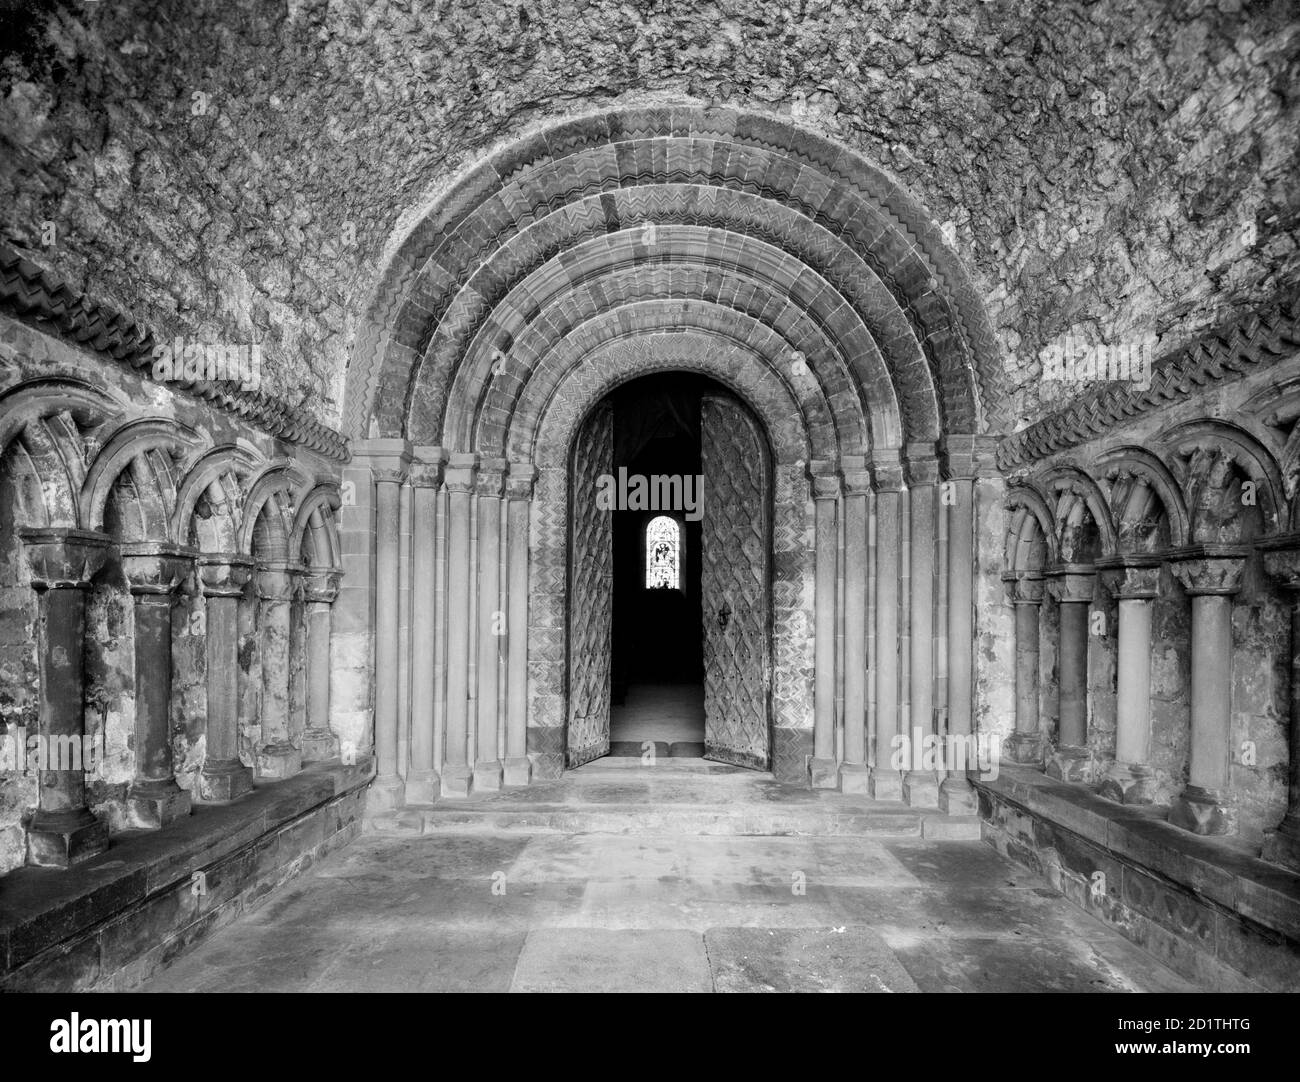 SOUTHWELL MINSTER, Nottinghamshire. L'interno del portico normanna nord guardando verso l'elaborata porta a cinque ordini a zig-zag con tetto a volta a tunnel. La cattedrale fu fondata prima della conquista nel 950, e successivamente divenne una delle chiese principali della regione. Fotografato da Henry Taunt (attivo 1860-1922). Foto Stock